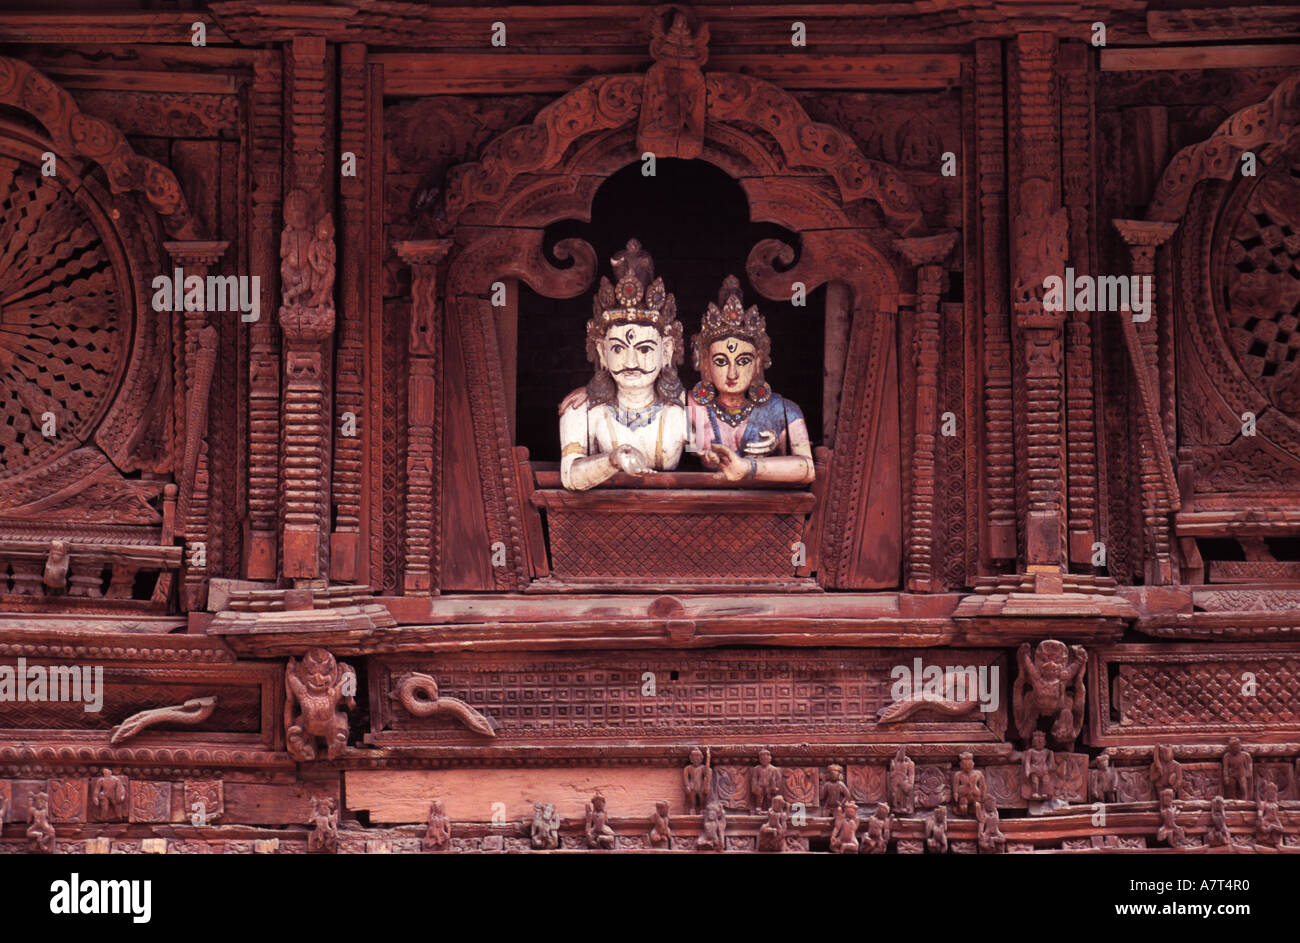 Nepal, Kathmandu, Durbar square, Shiva and Parvati temple Stock Photo